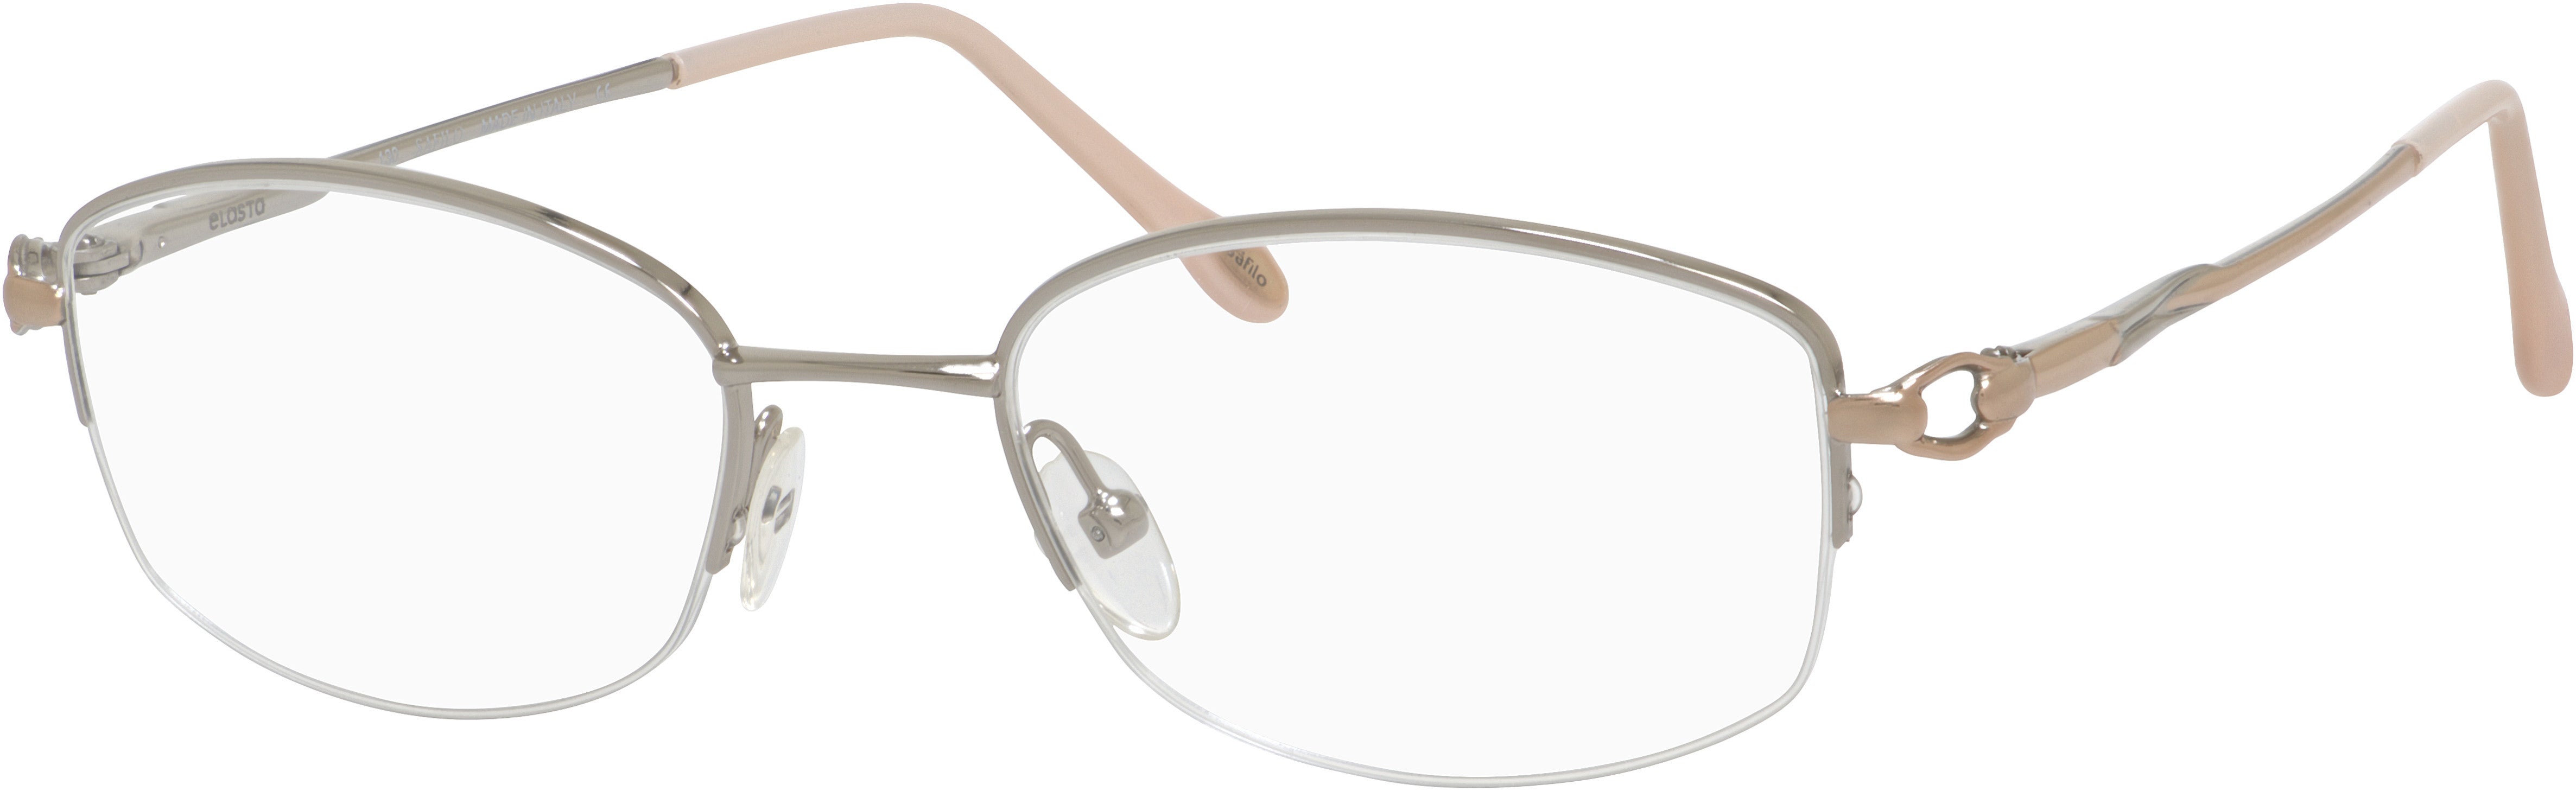  Emozioni 4321/N Oval Modified Eyeglasses 0NBQ-0NBQ  Silver Gold (00 Demo Lens)